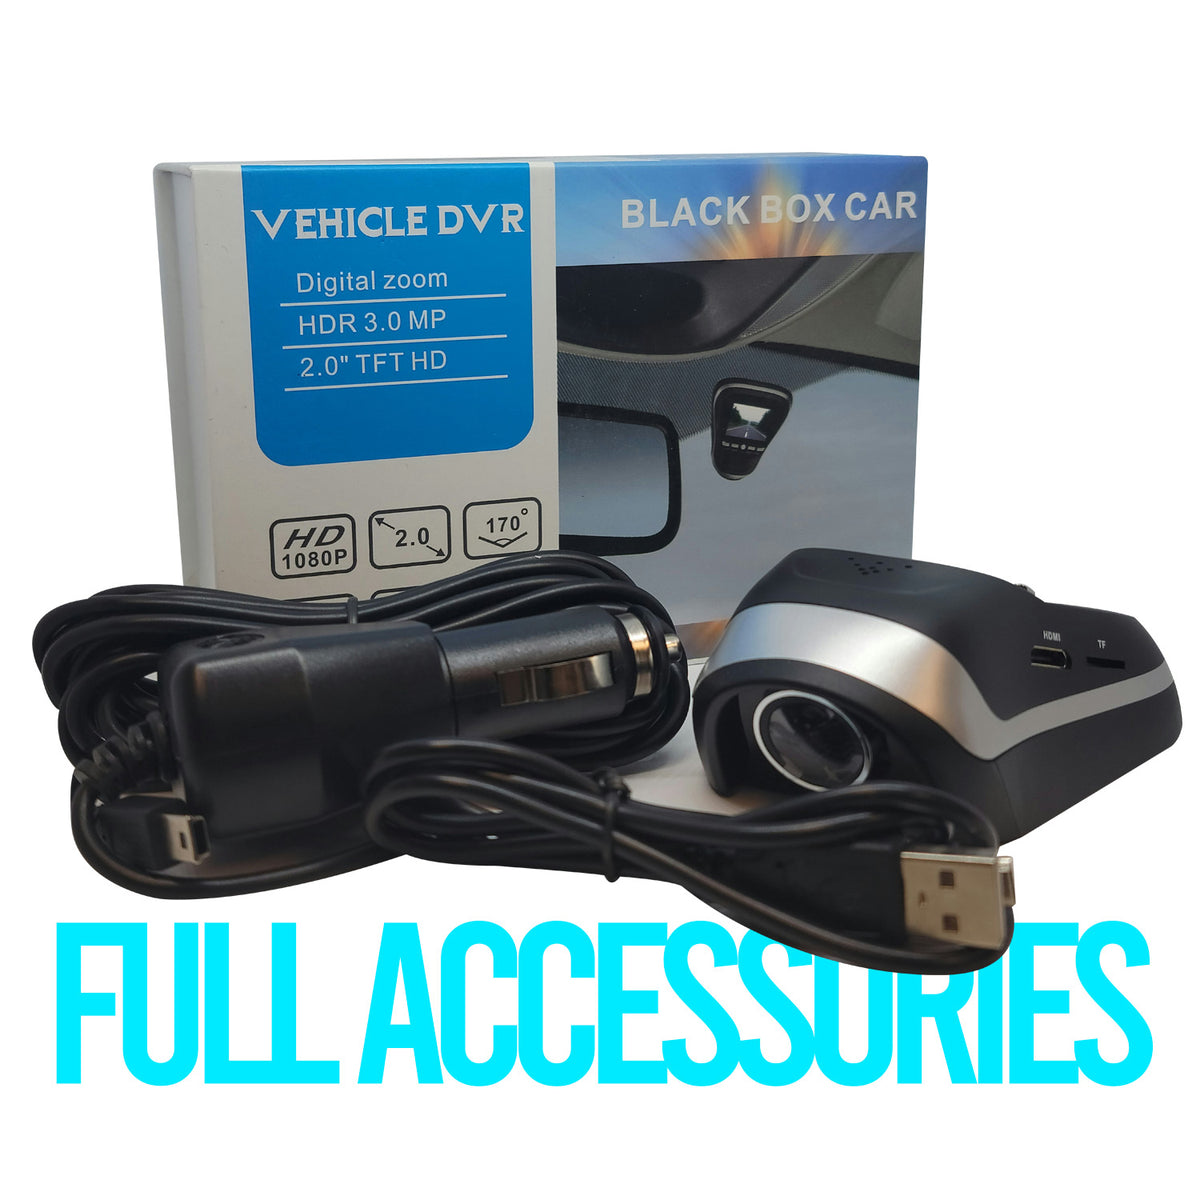 http://tripletraders.com/cdn/shop/products/black-box-car-vehicle-dvr-dashcam-02_1200x1200.jpg?v=1668536647